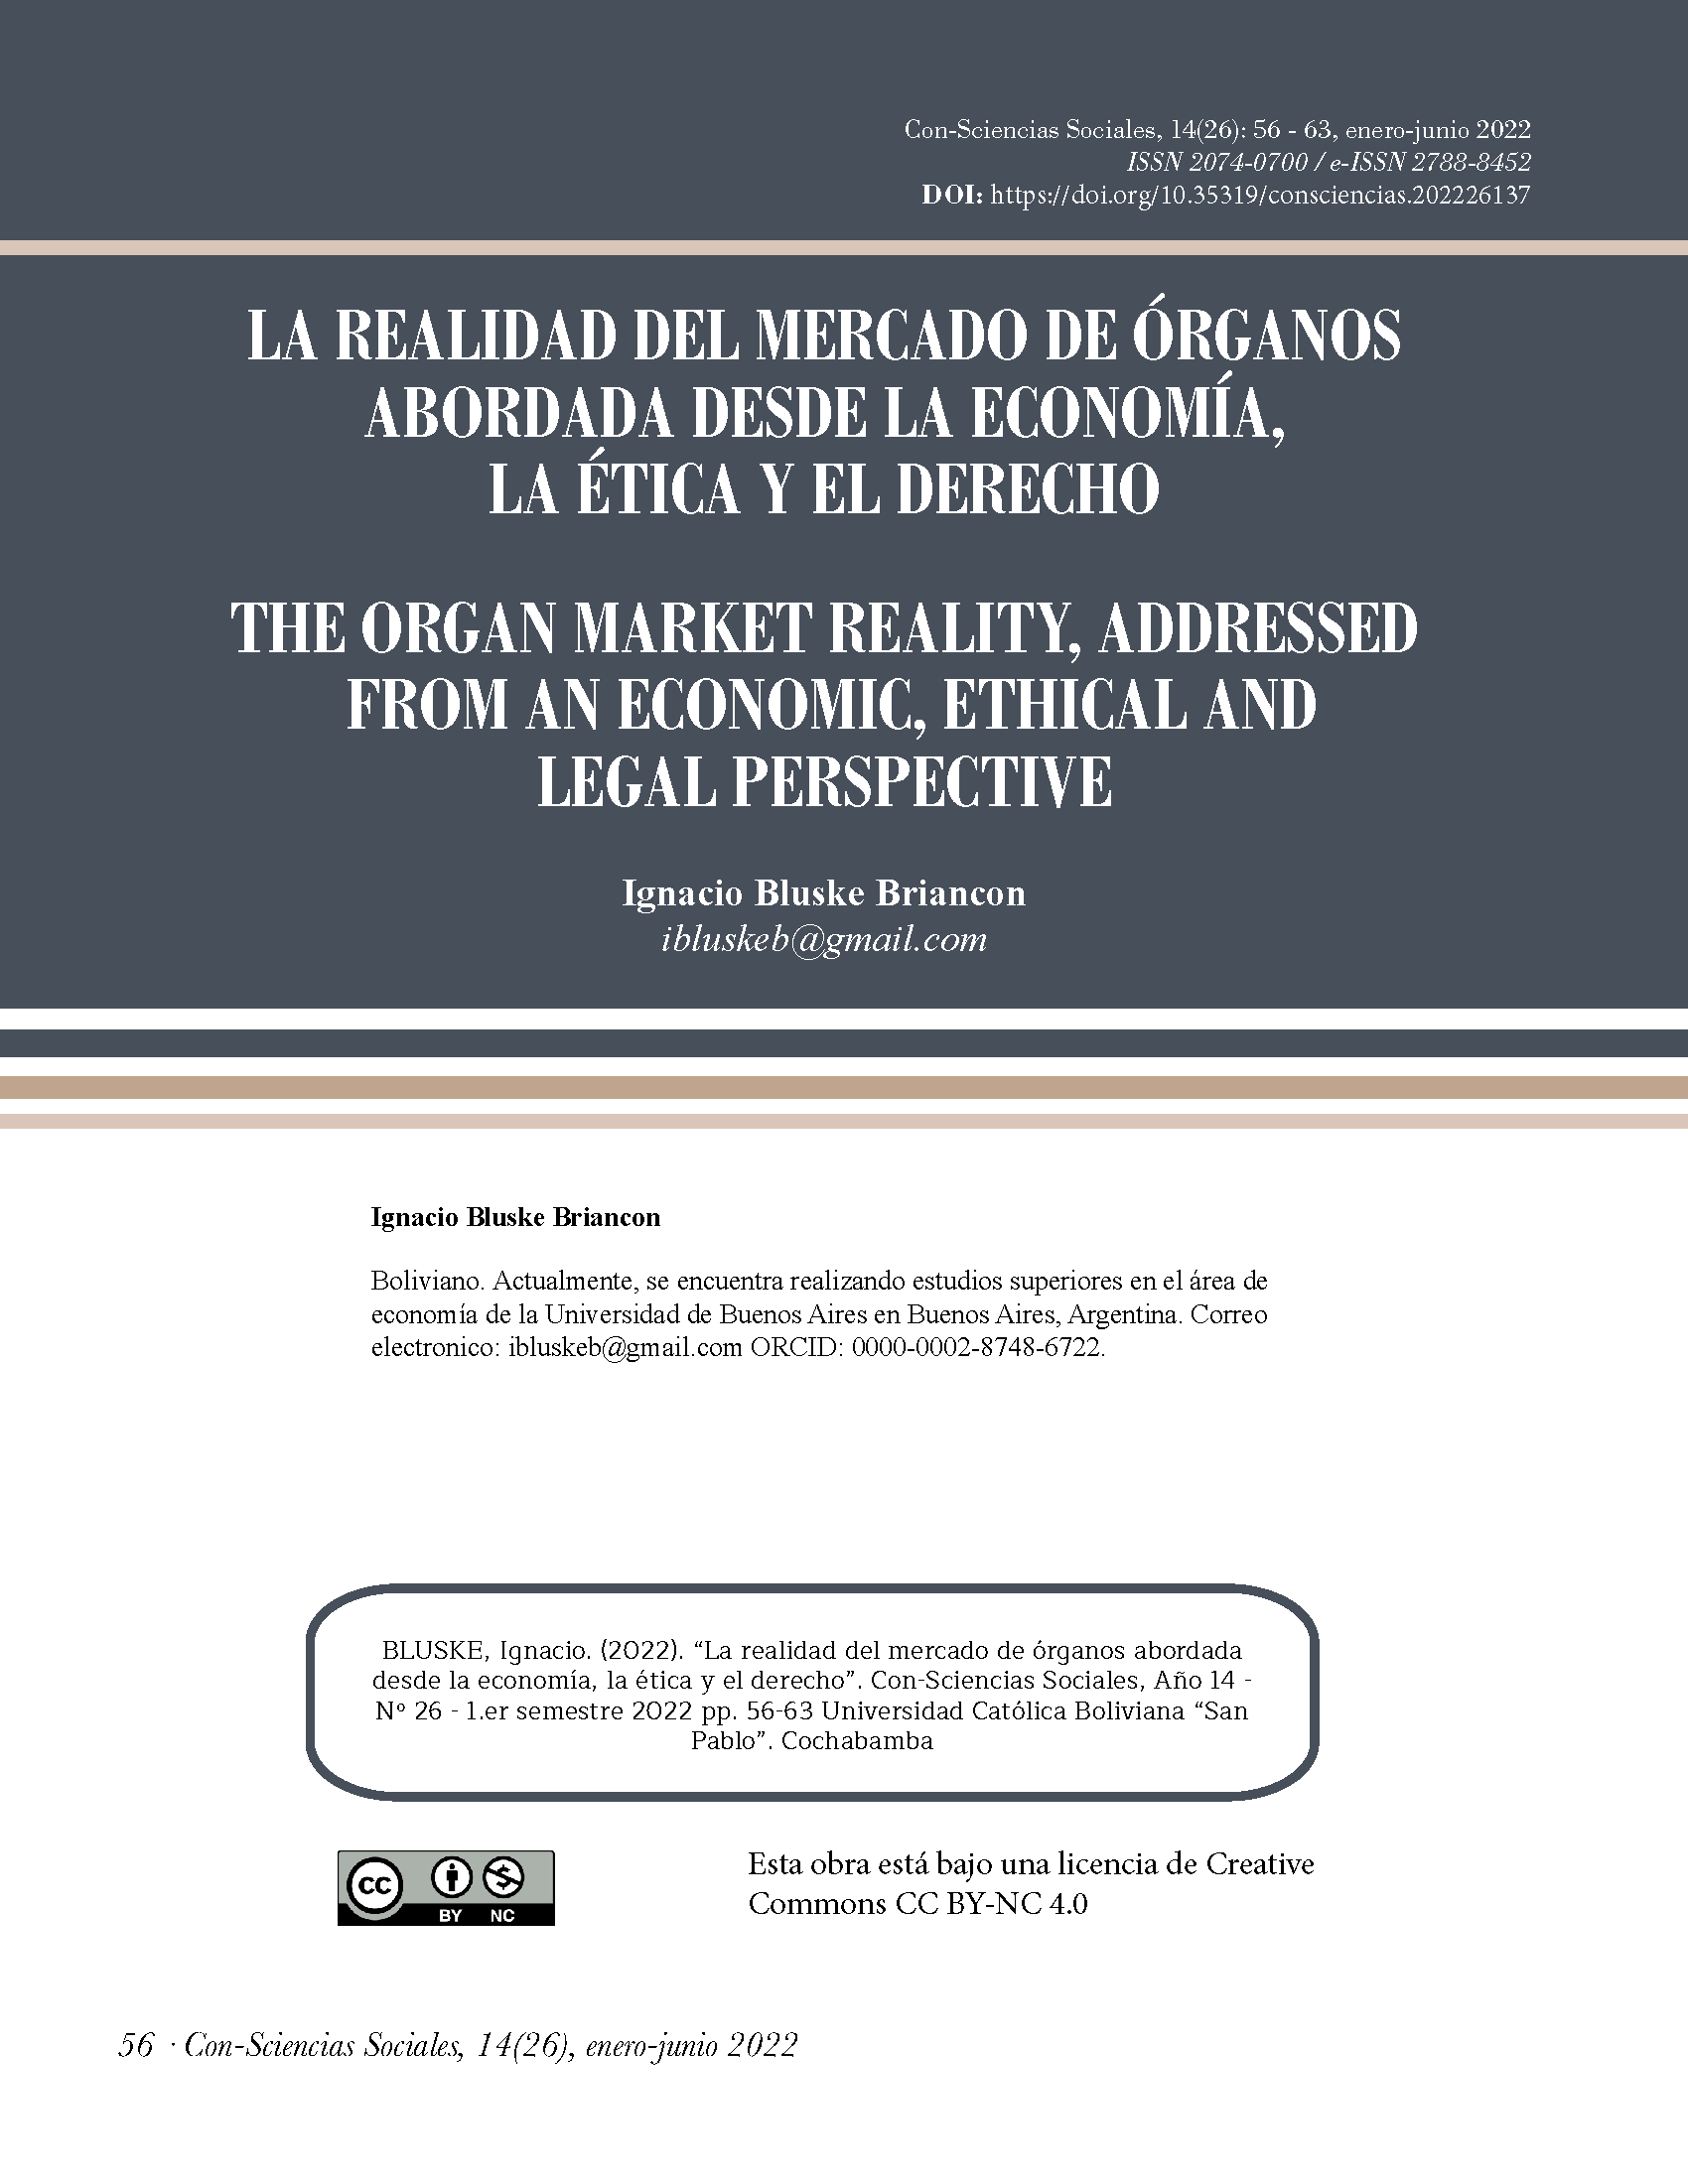  La realidad del mercado de órganos abordada desde la economía, la ética y el derecho 